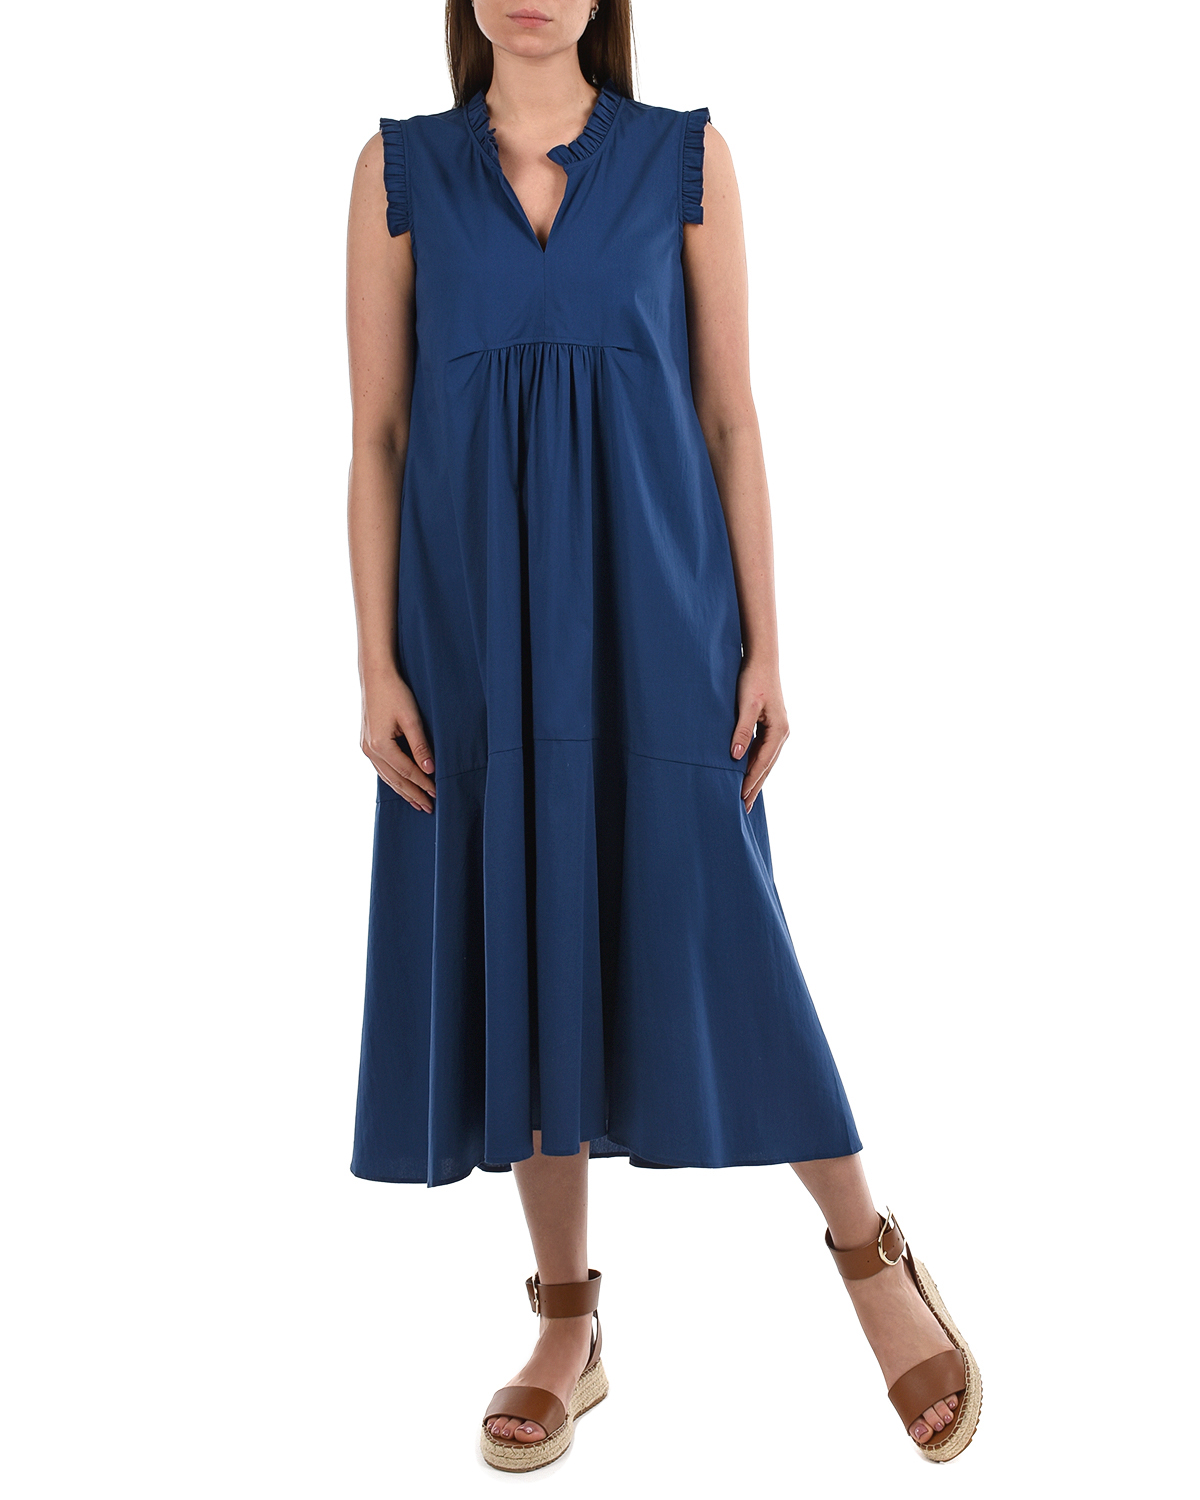 Синее платье с рюшами Attesa, размер 38, цвет синий - фото 4